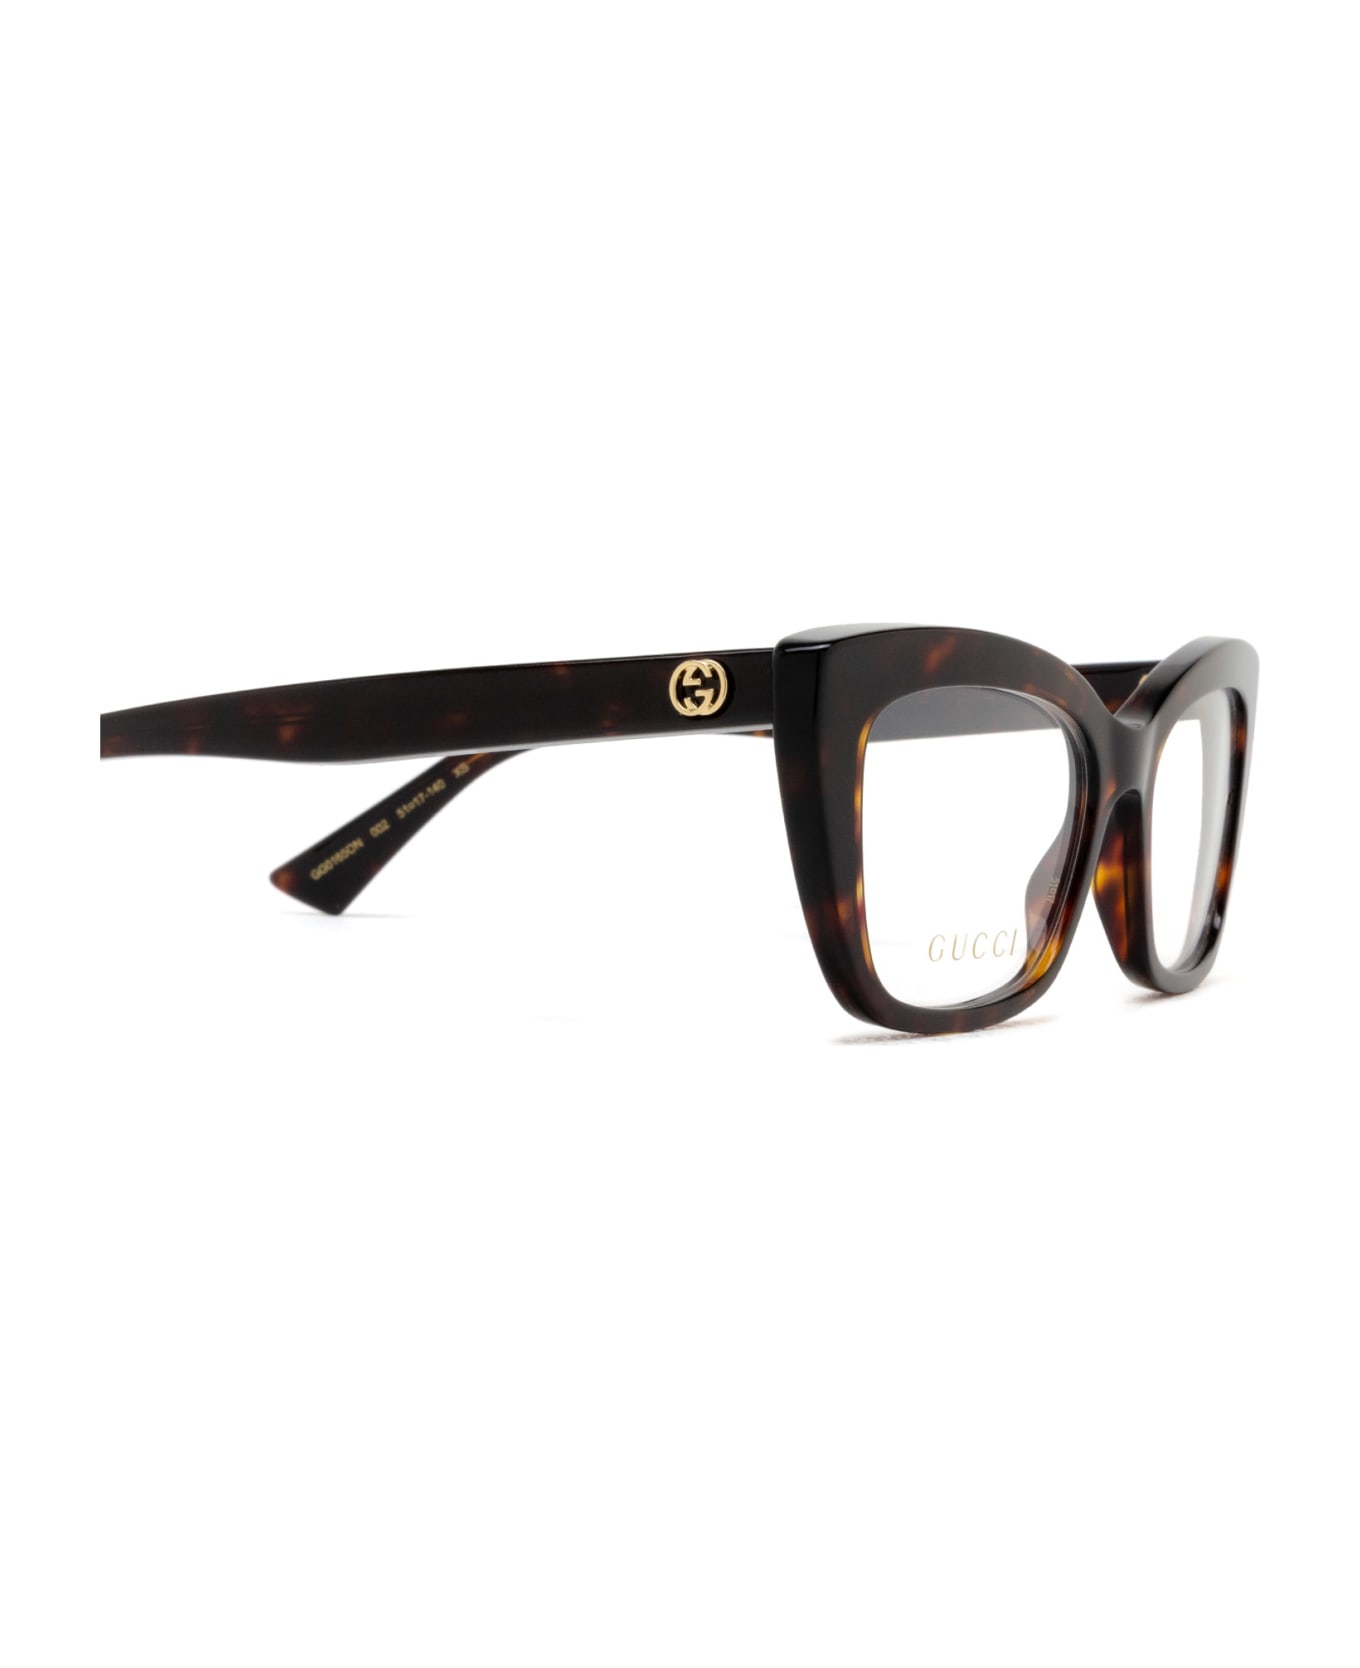 Gucci Eyewear Gg0165on Havana Glasses - Havana アイウェア